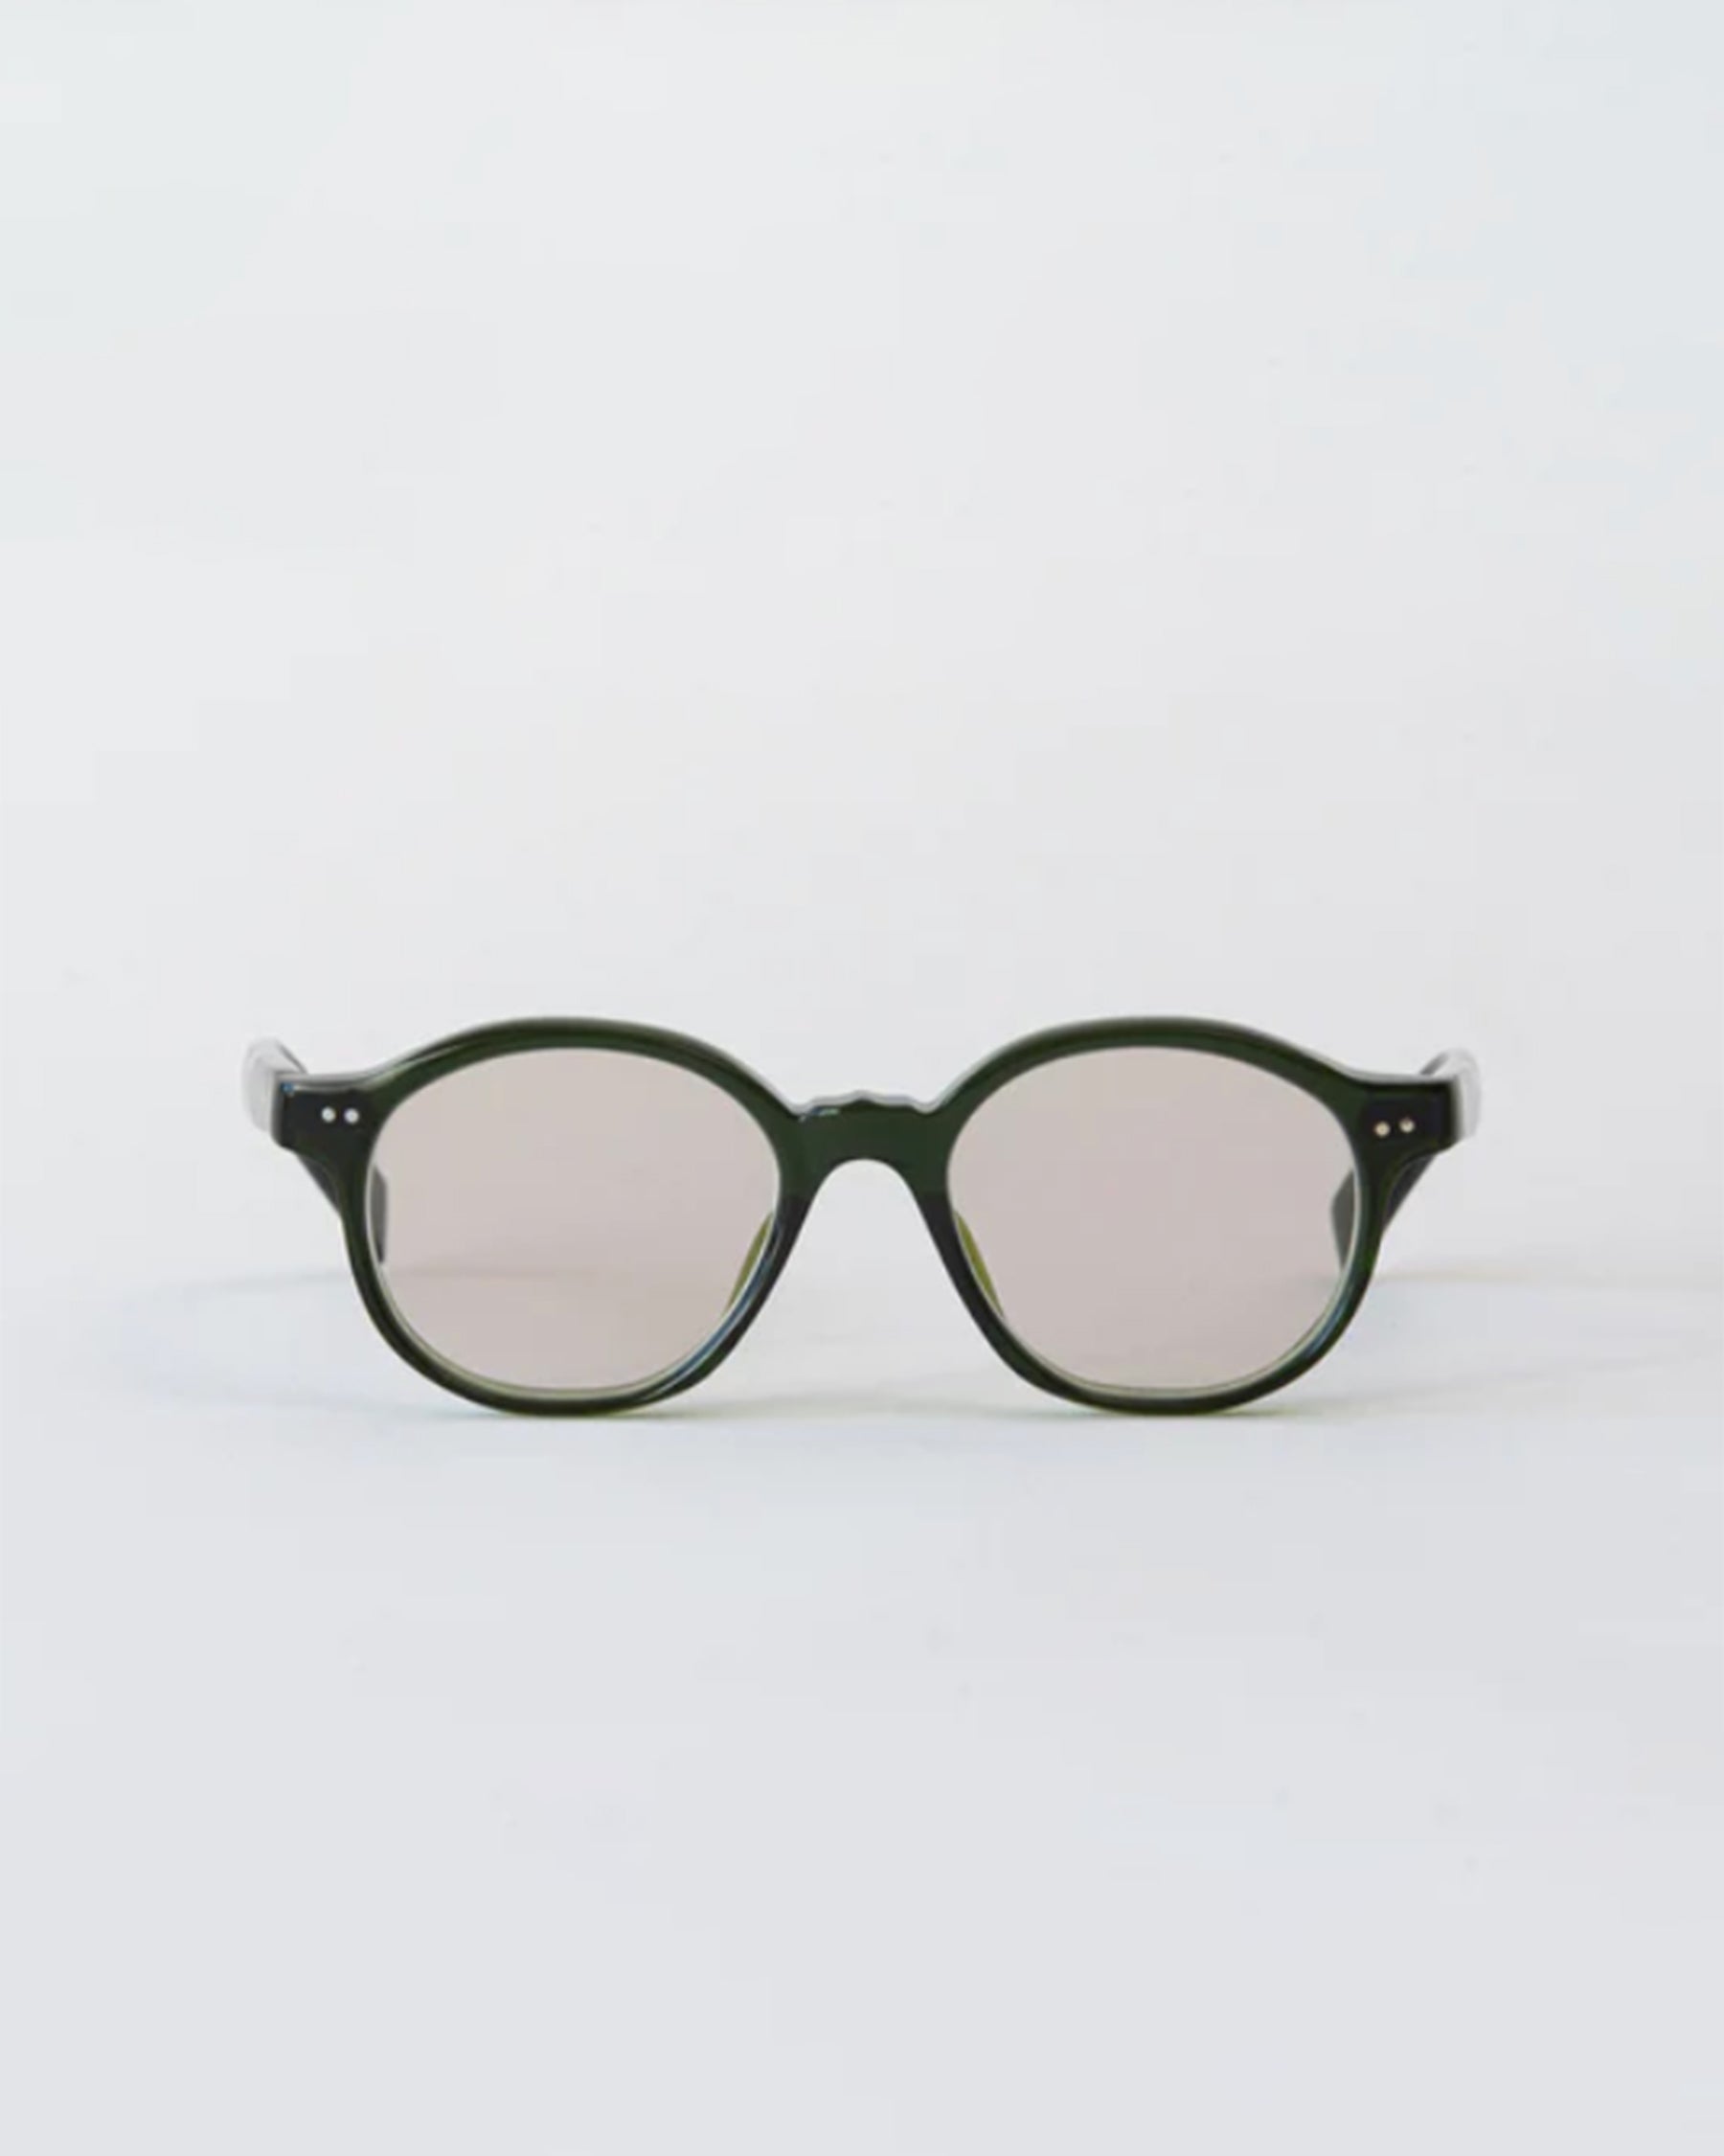 gp-10 Sunglasses vert/ Lens: Brown